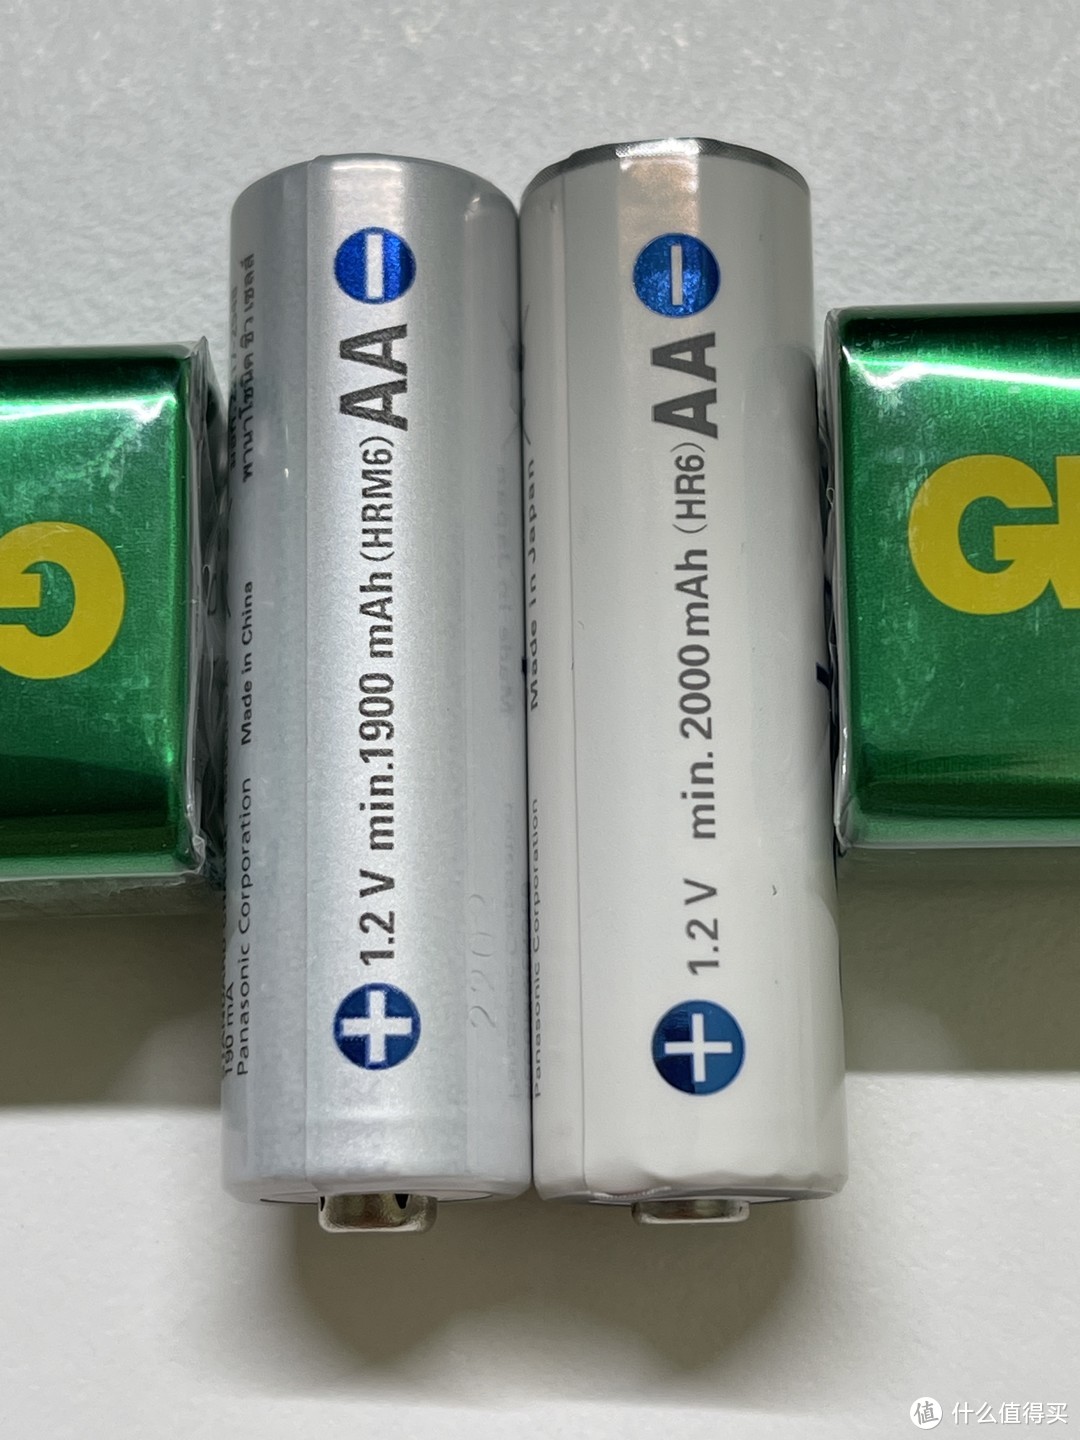 两个渠道购买的爱乐普eneloop电池对比﻿